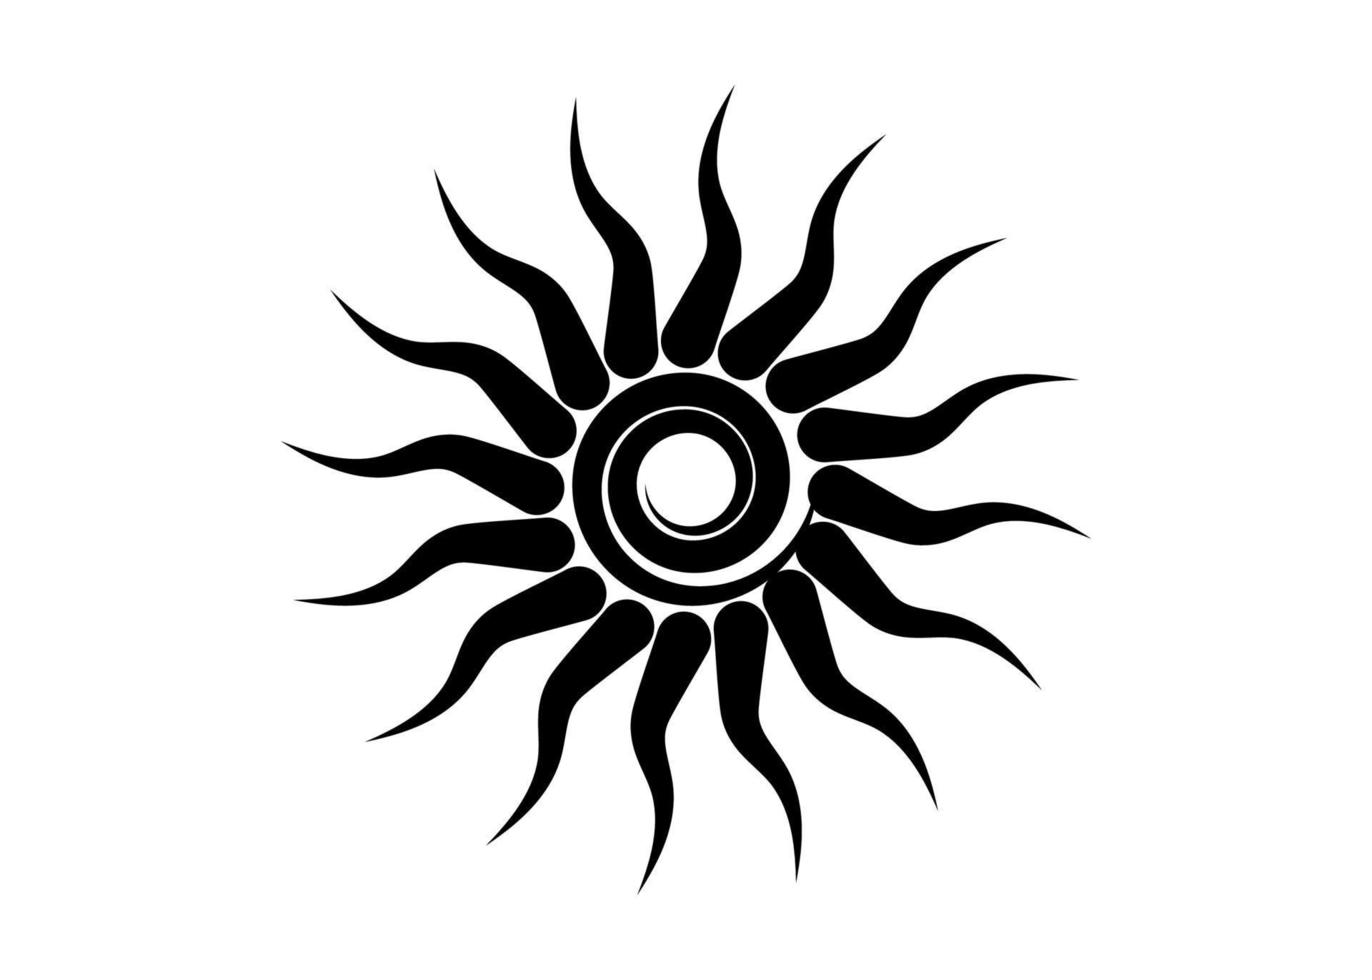 simbolo del sonnenrad del tatuaggio del sole tribale nero, segno della ruota del sole. icona estiva. l'antico elemento esoterico europeo. logo elemento grafico a forma di spirale. disegno vettoriale isolato o sfondo bianco